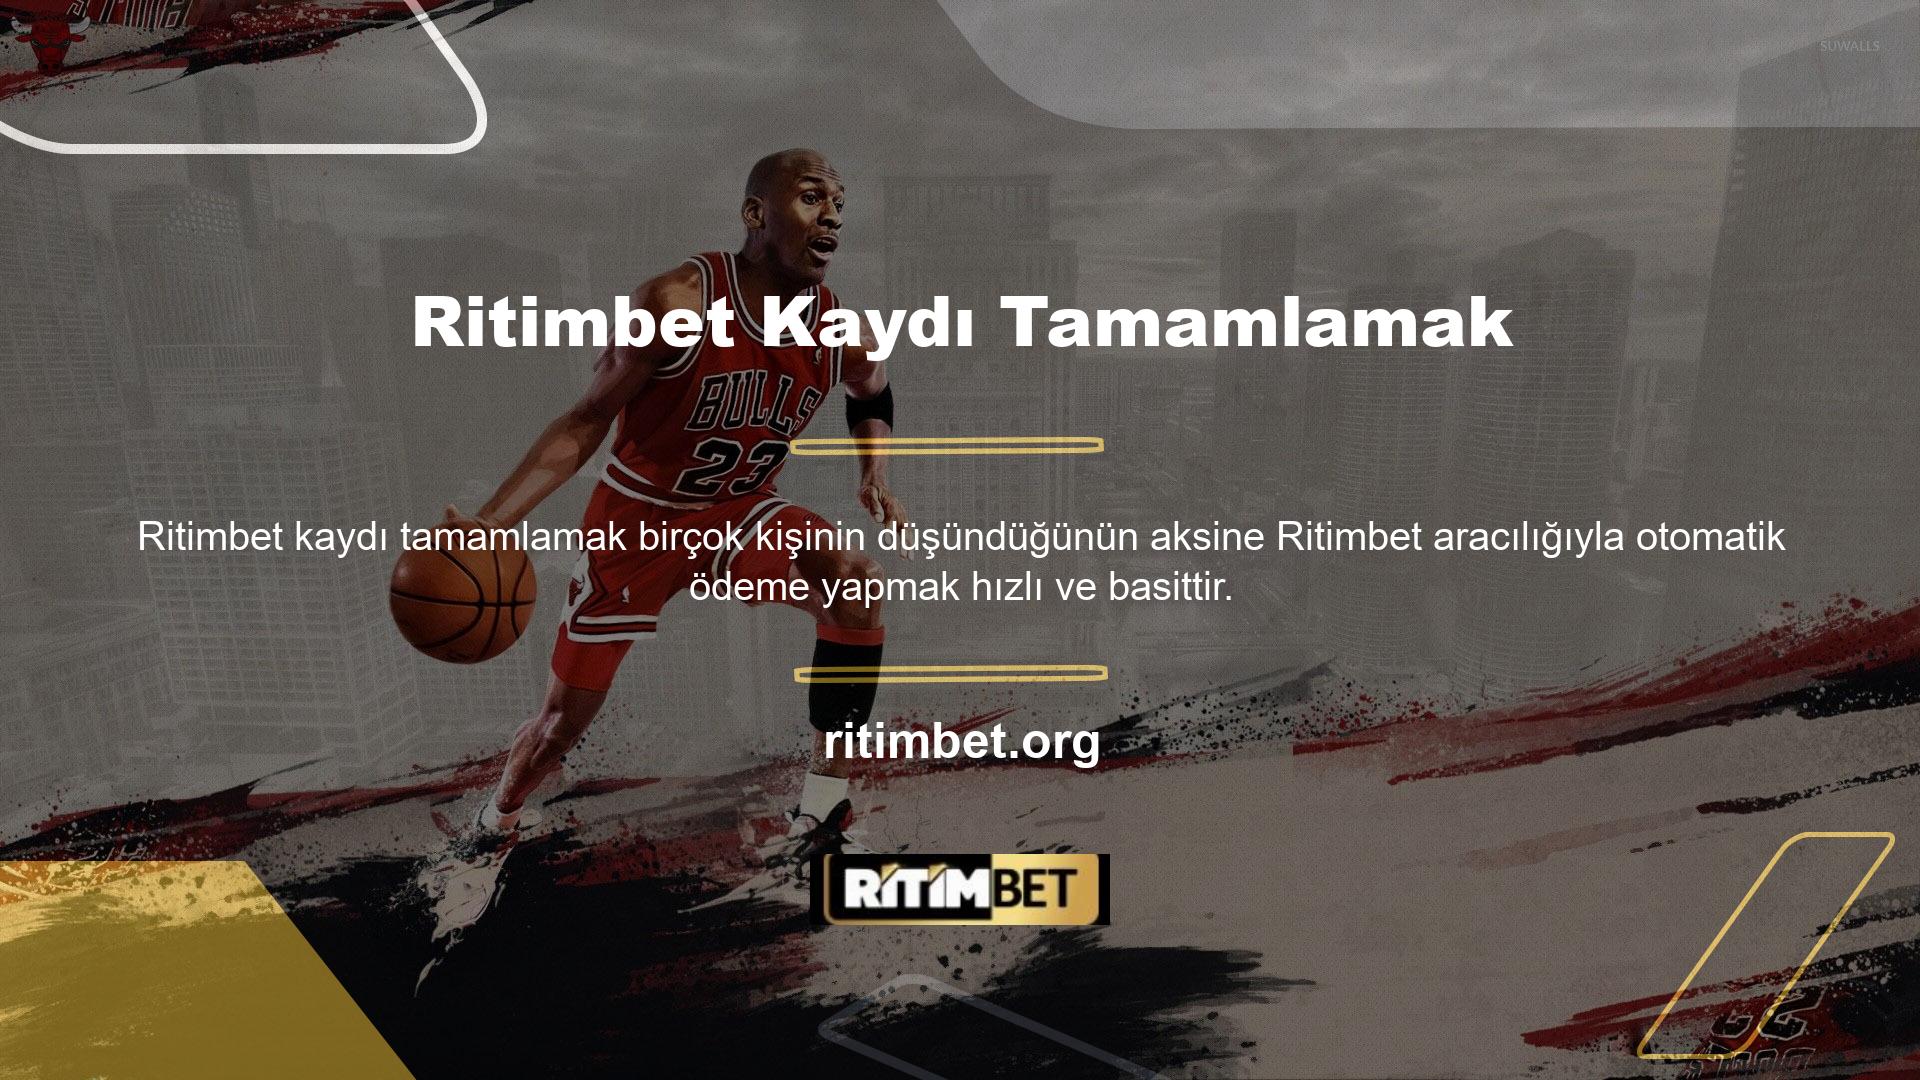 İnternet üzerinden Ritimbet oyunlarını oynamak isteyen Ritimbet online oyun müşterilerinin Ritimbet hesaplarına para göndermeleri gerekmektedir ancak bazı kurallar bulunmaktadır